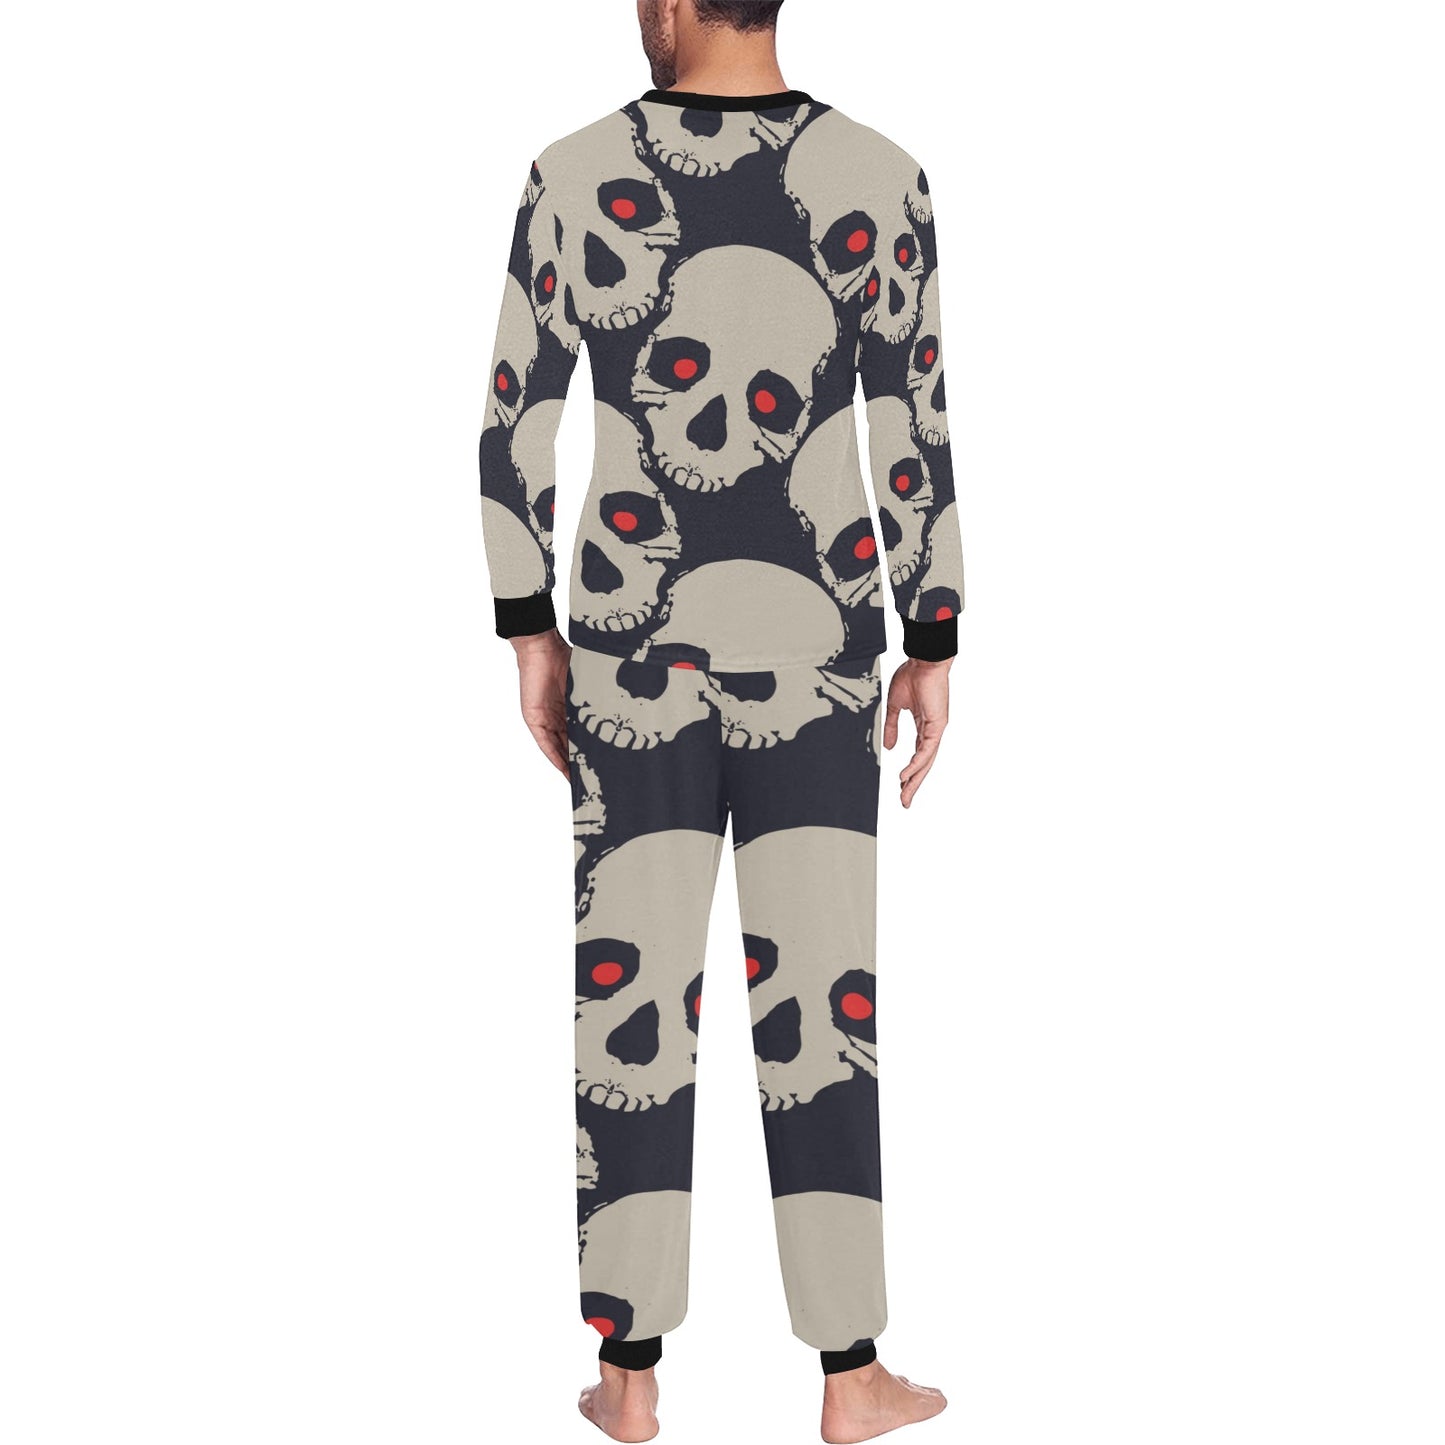 Red Eyed Skulls Pajama Set